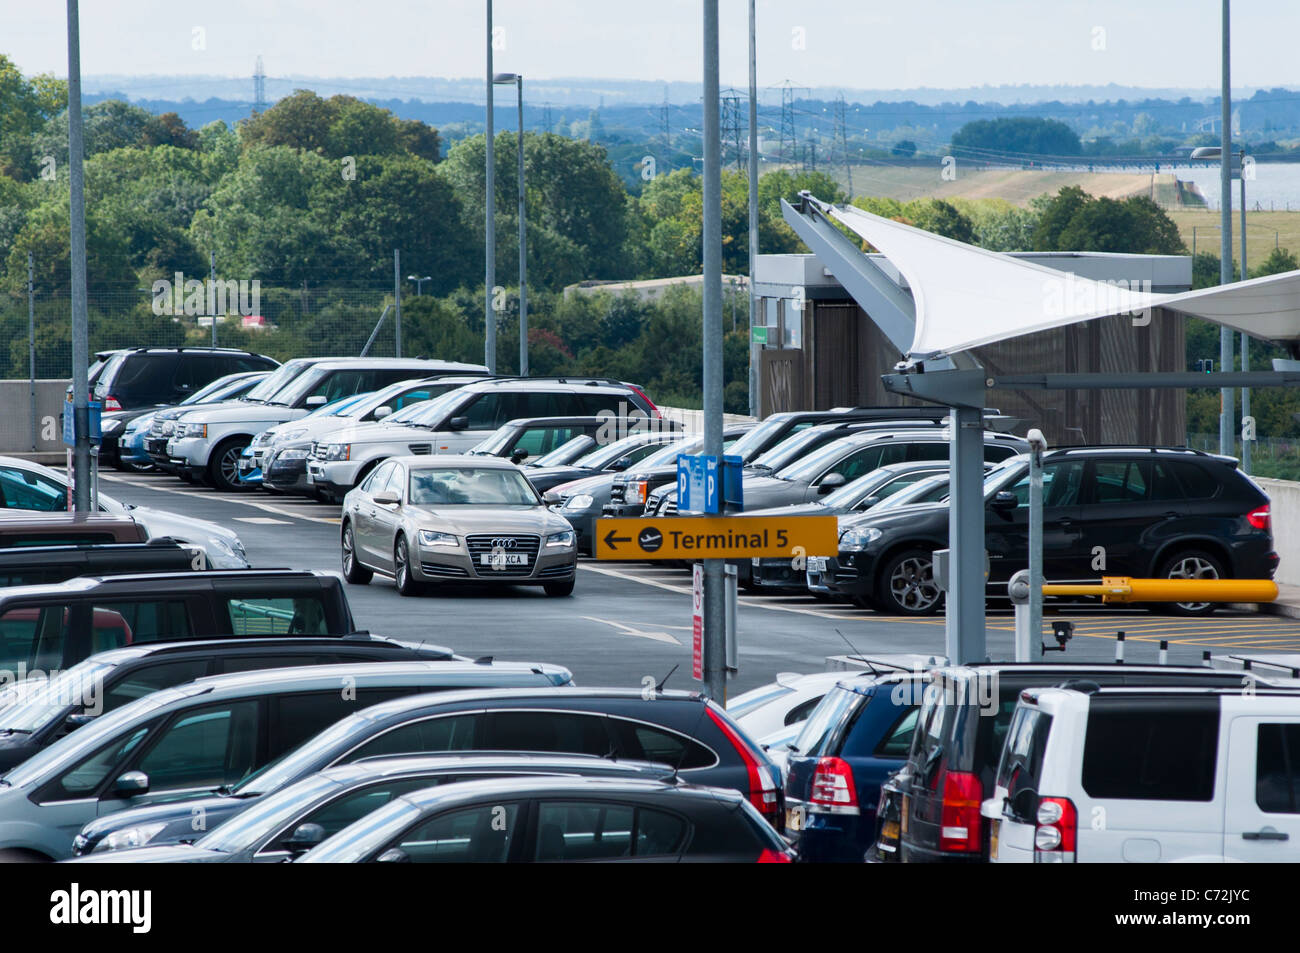 Terminal 5 Parkplätze, Flughafen Heathrow, London, UK Stockfoto